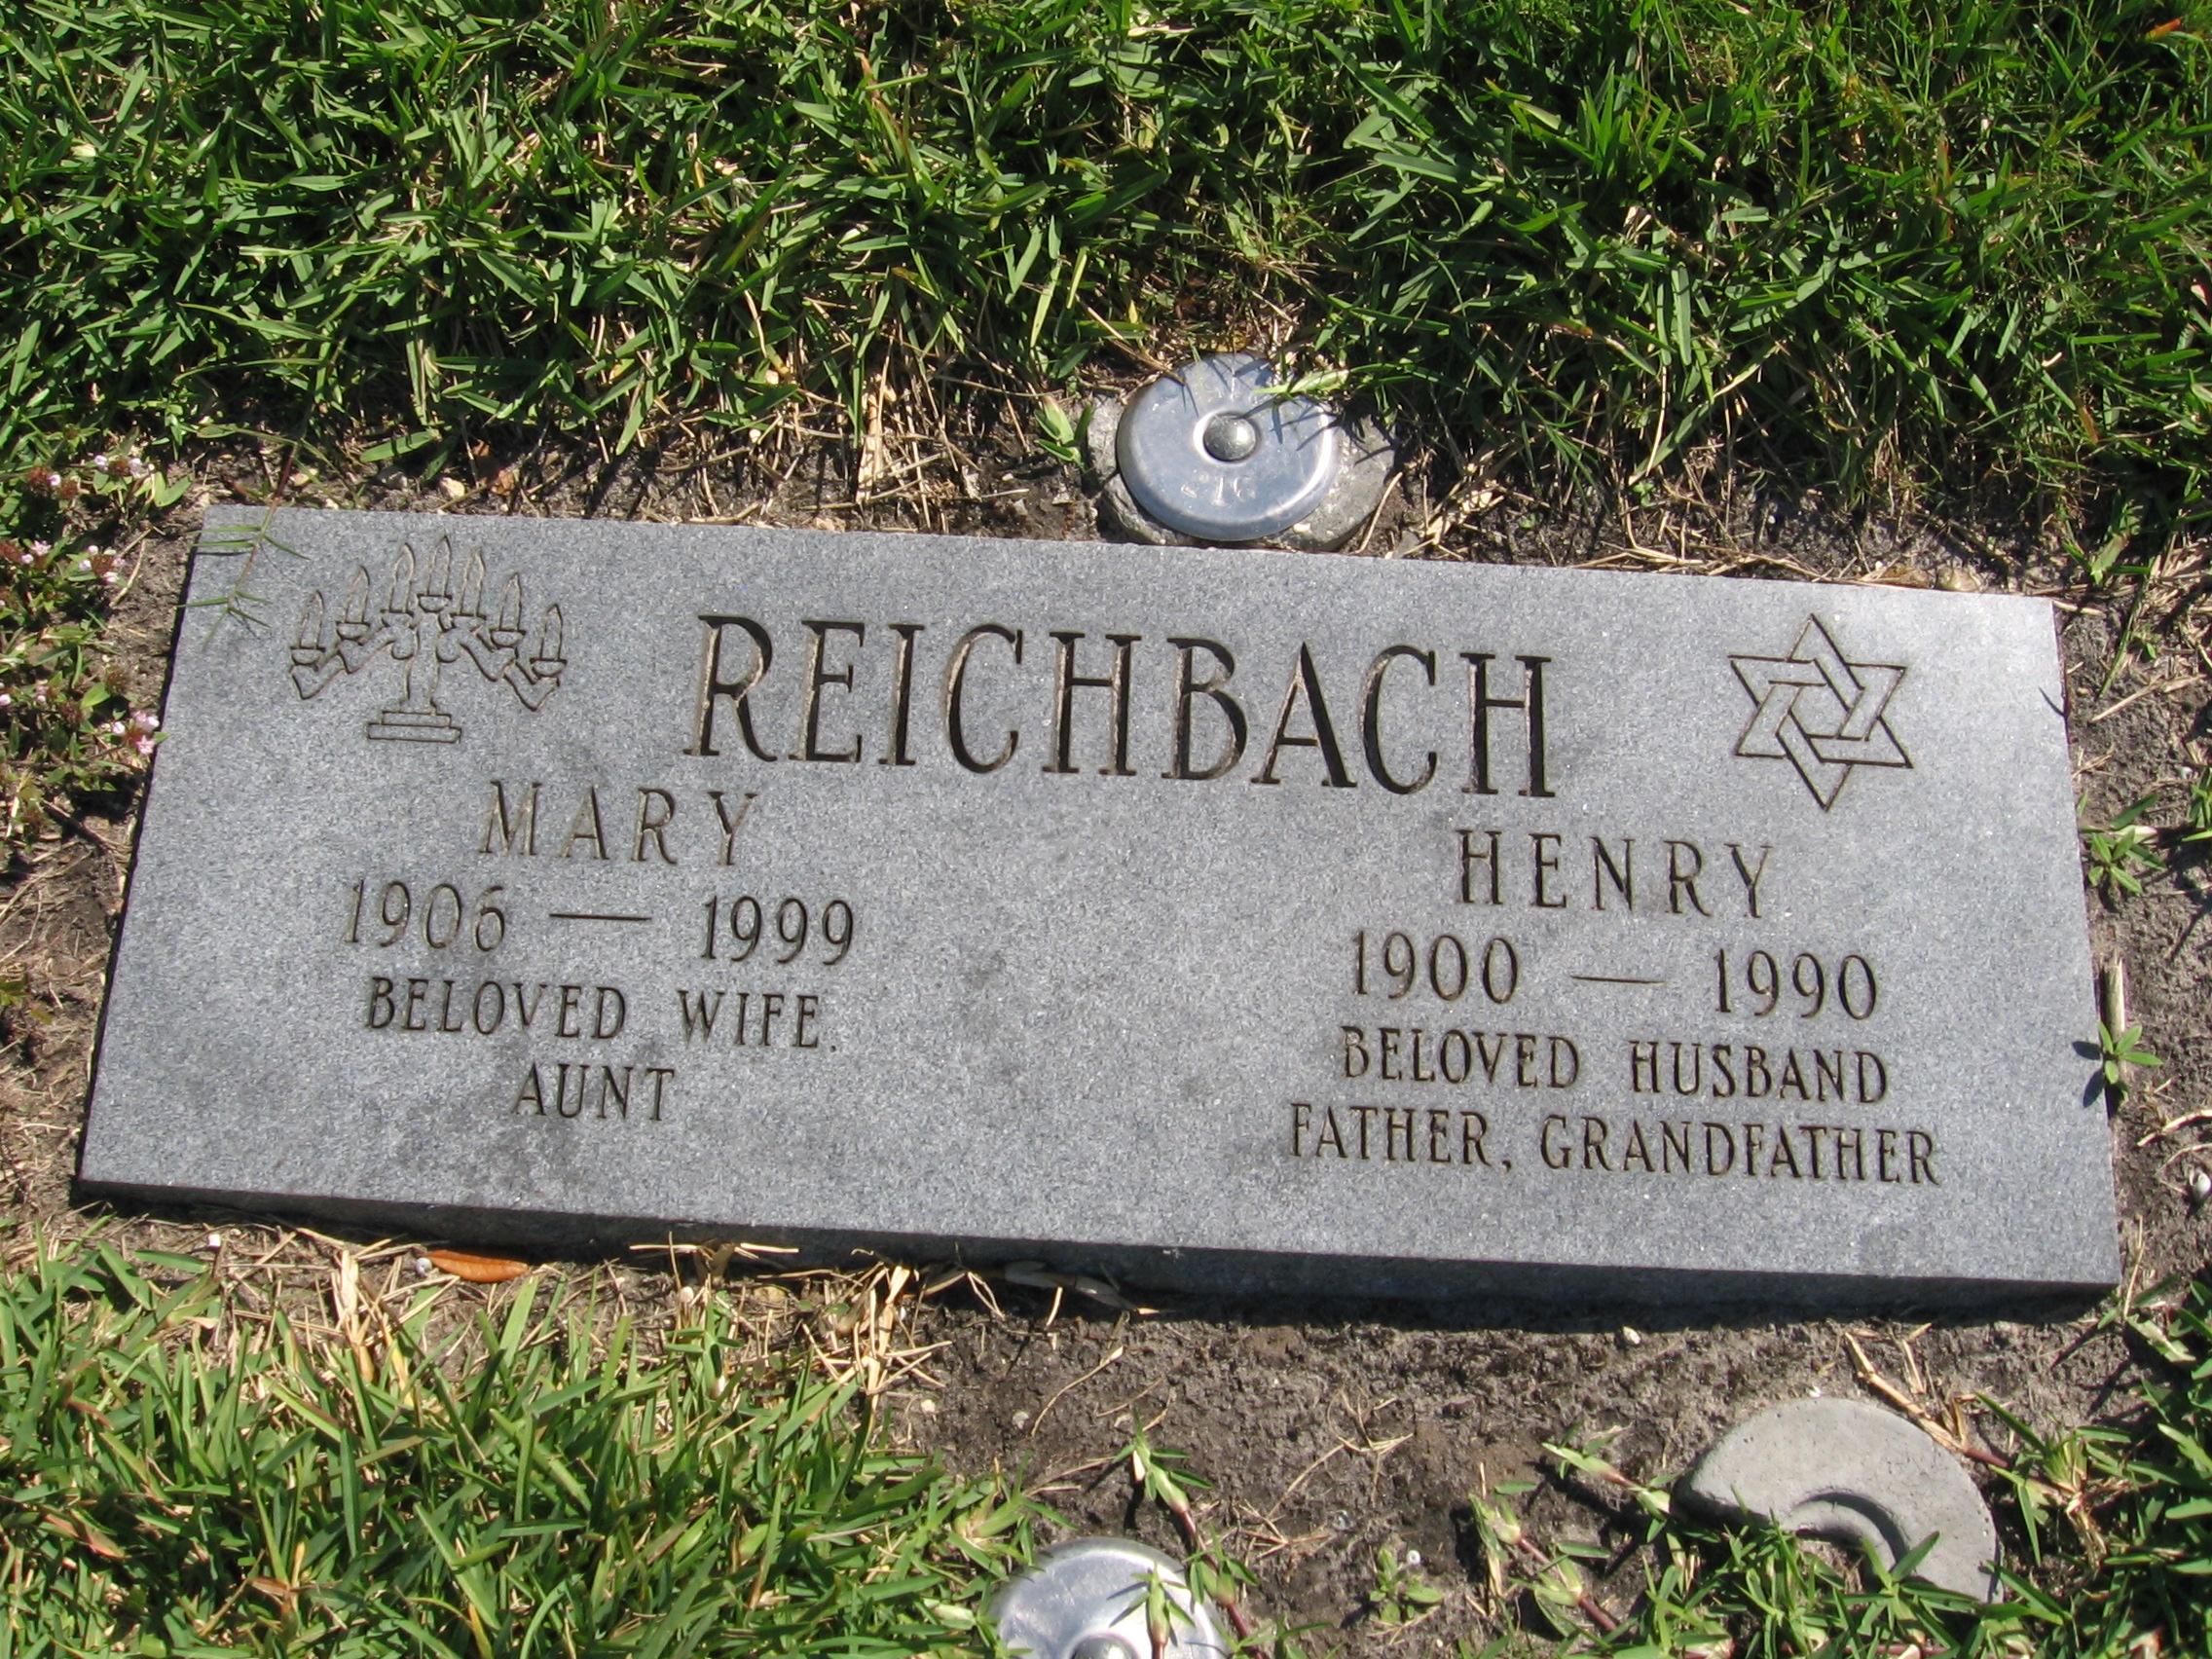 Henry Reichbach